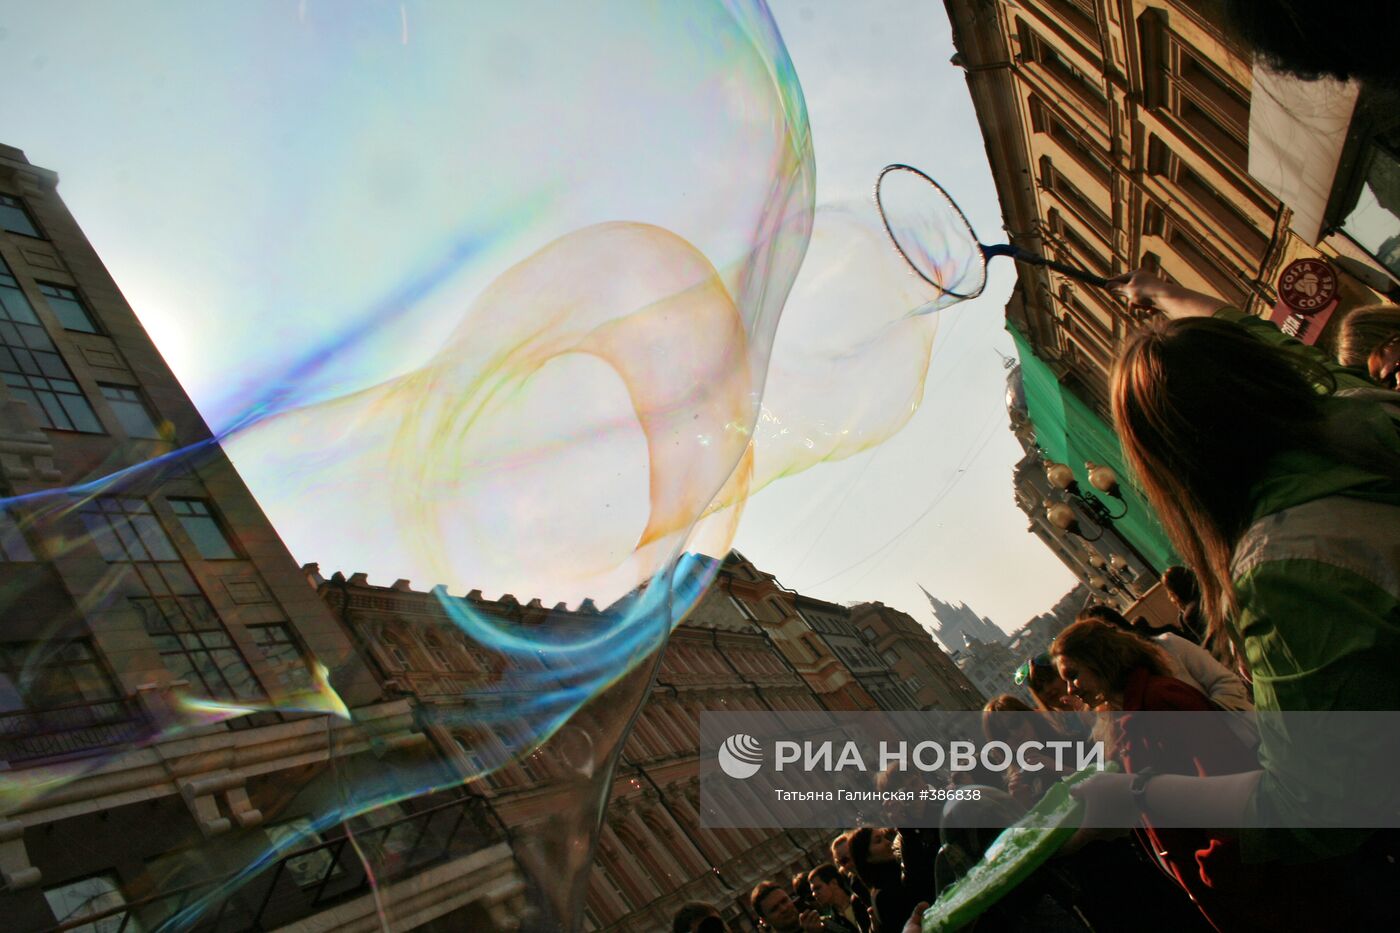 "Марш мыльных пузырей" на Старом Арбате